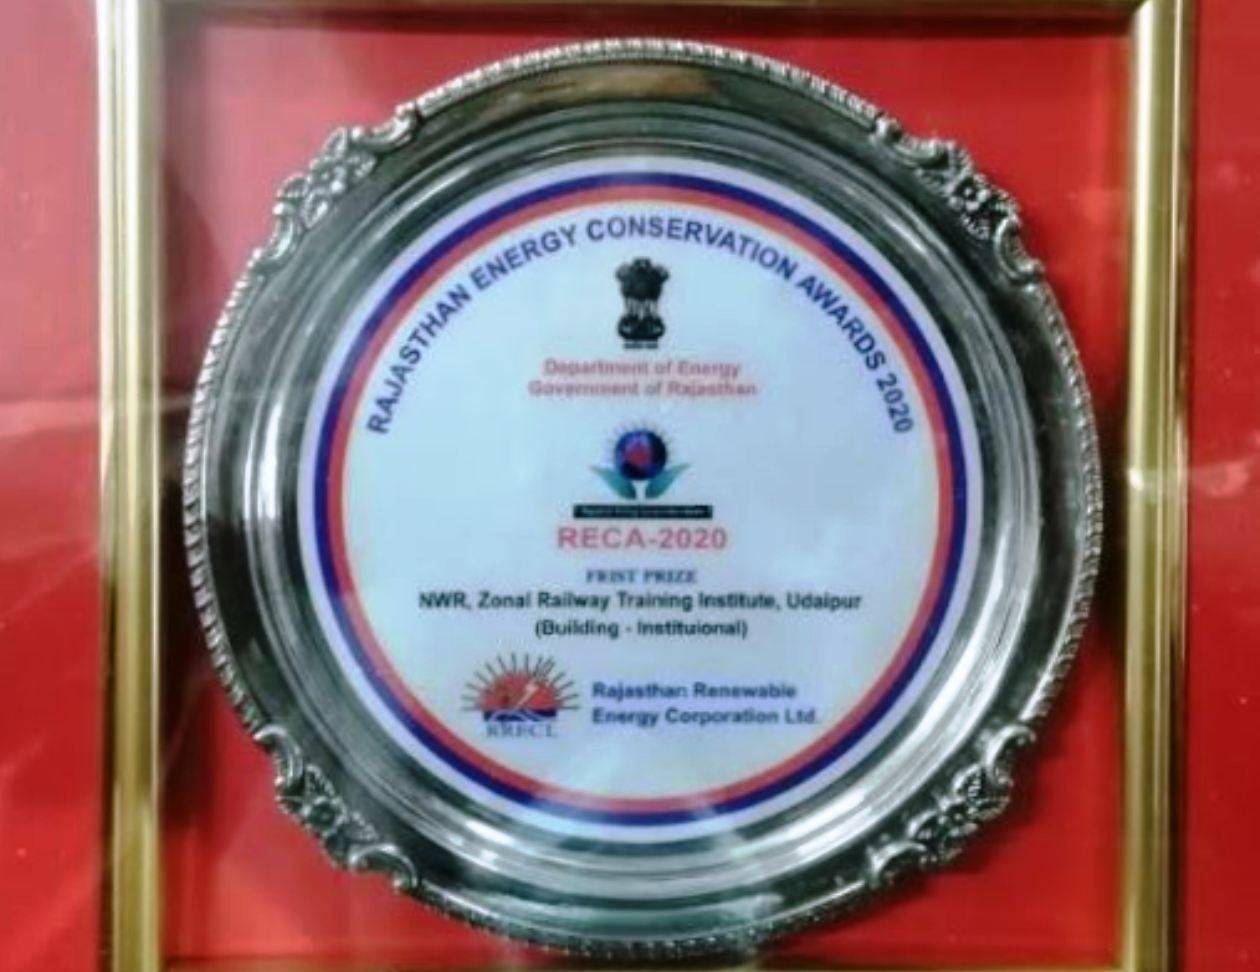 उदयपुर स्थित जोनल रेलवे ट्रेनिंग इंस्टिट्युट को राजस्थान ऊर्जा संरक्षण पुरस्कार